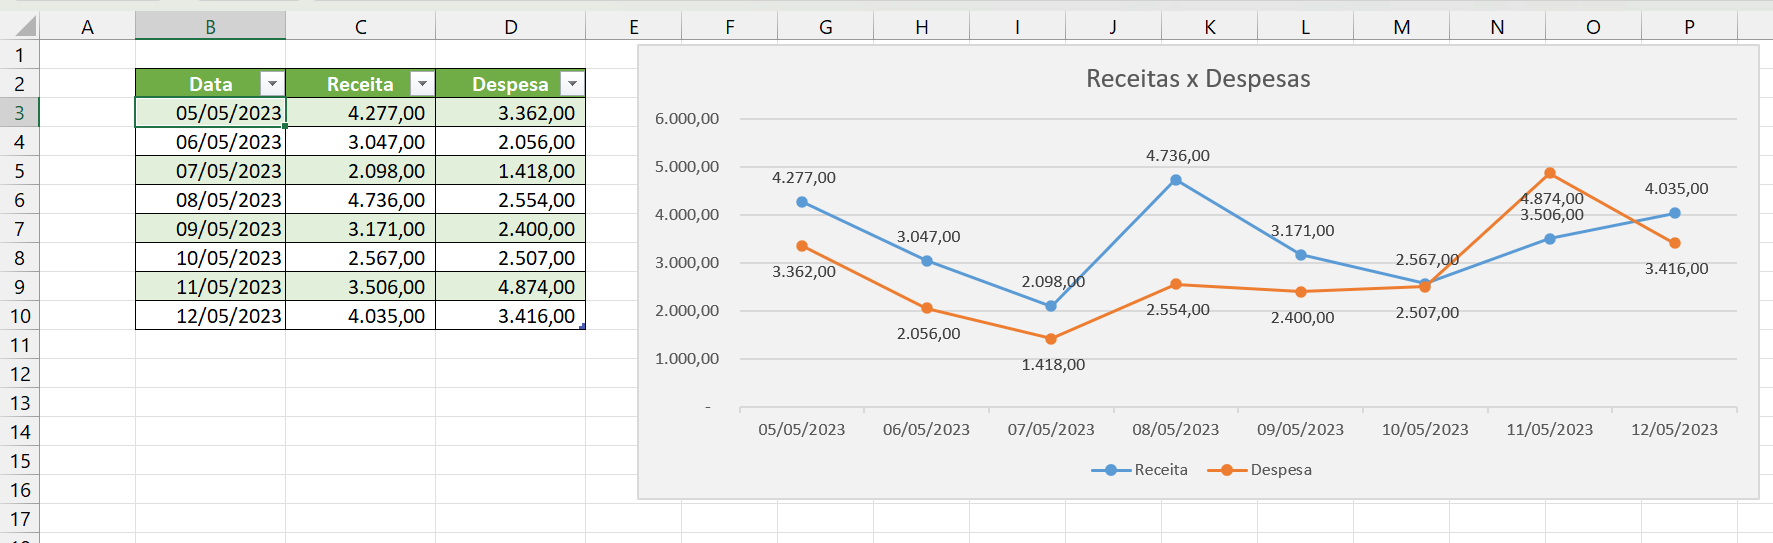 Erro Comum em Gráfico no Excel